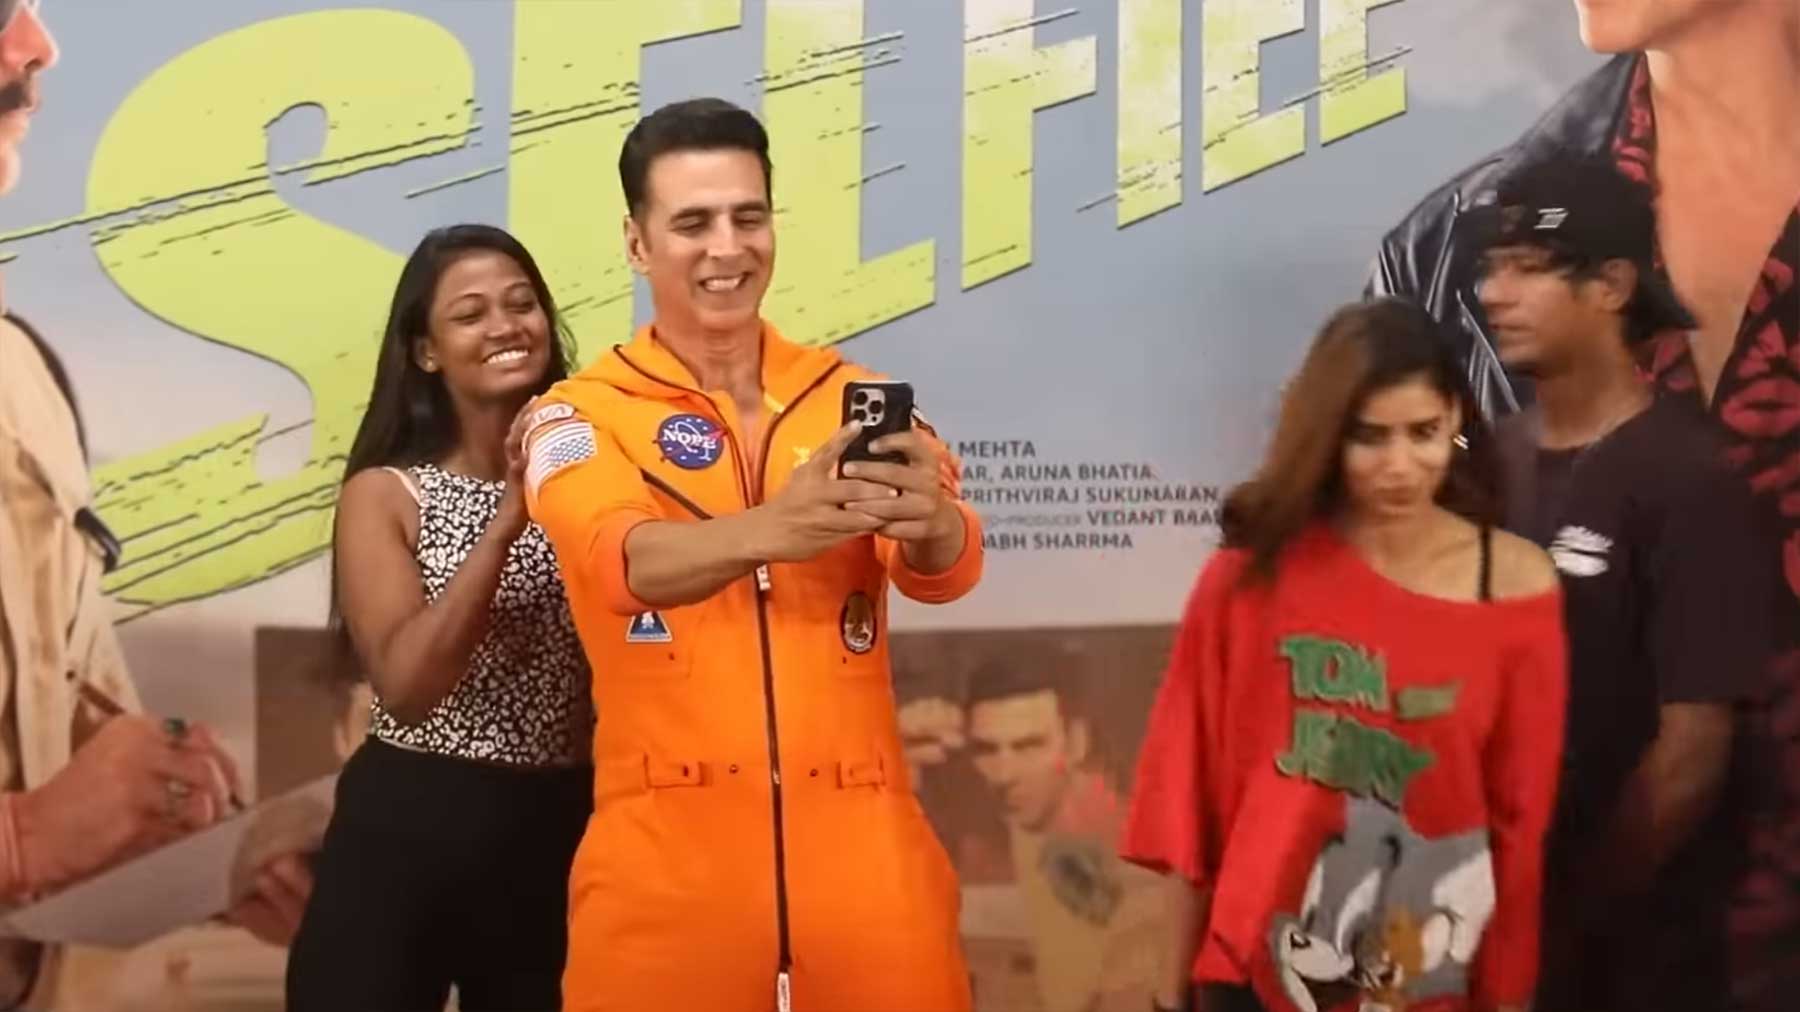 Weltrekord: 184 Selfies in 3 Minuten! weltrekord-im-selfies-schiessen-bollywood-schauspieler 